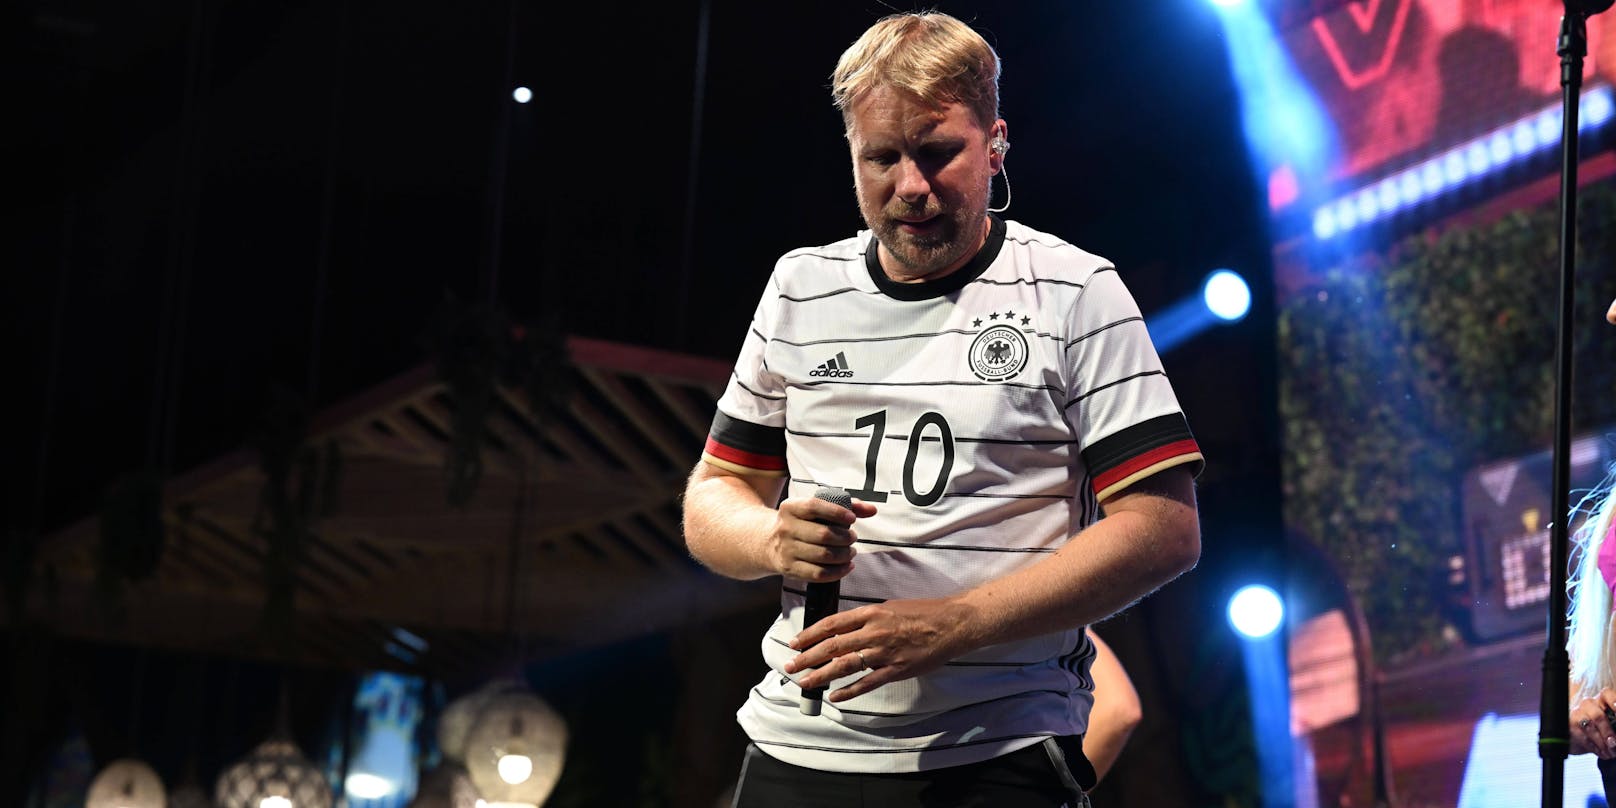 Oliver Pocher performt sein WM-Lied im Megapark.